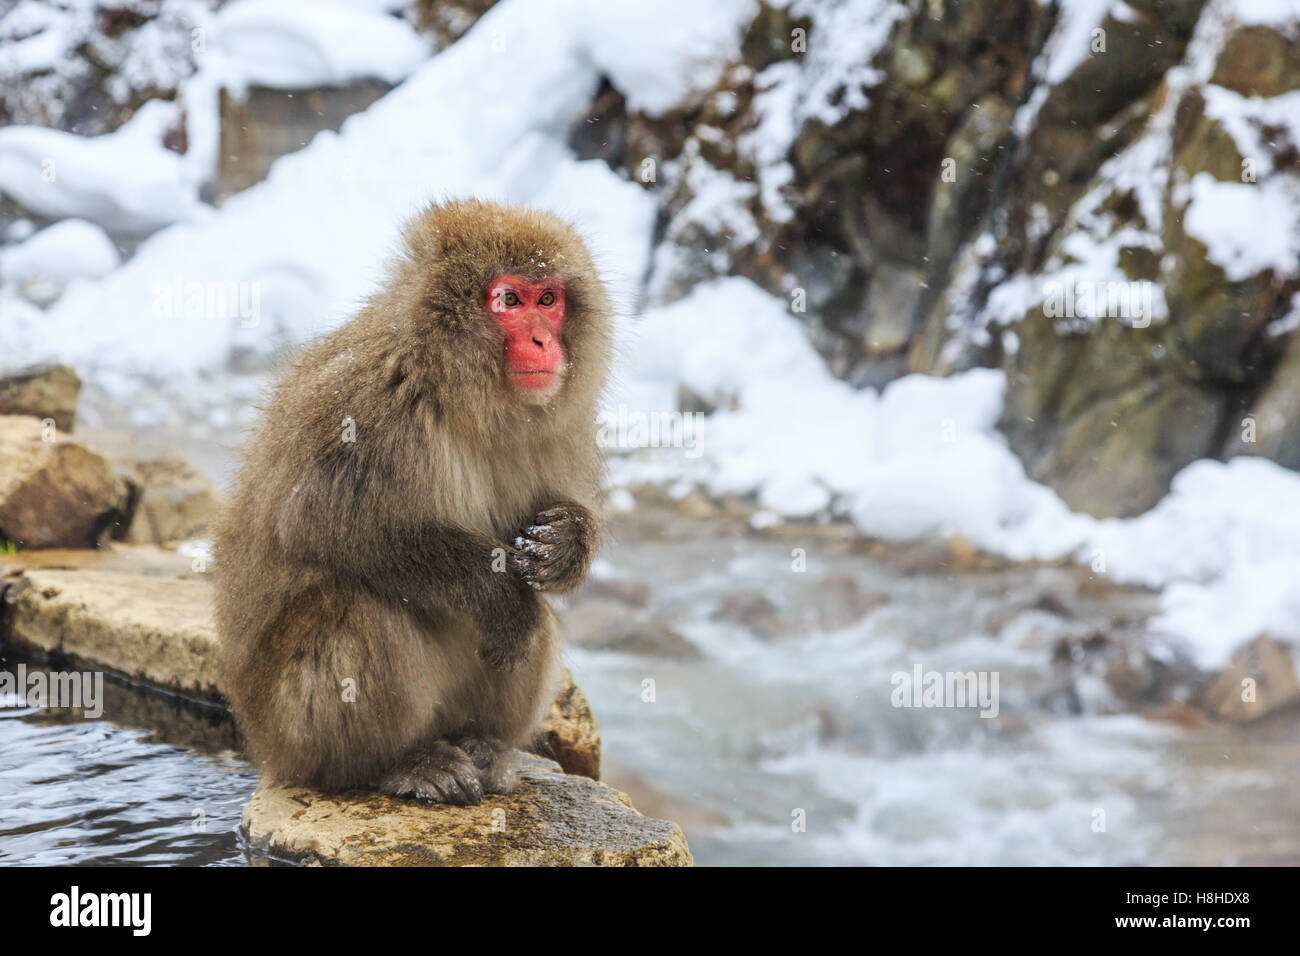 Schnee-Affen bei einem natürlichen Onsen (heiße Quelle), befindet sich in Jigokudani Park, Yudanaka. Nagano, Japan. Stockfoto